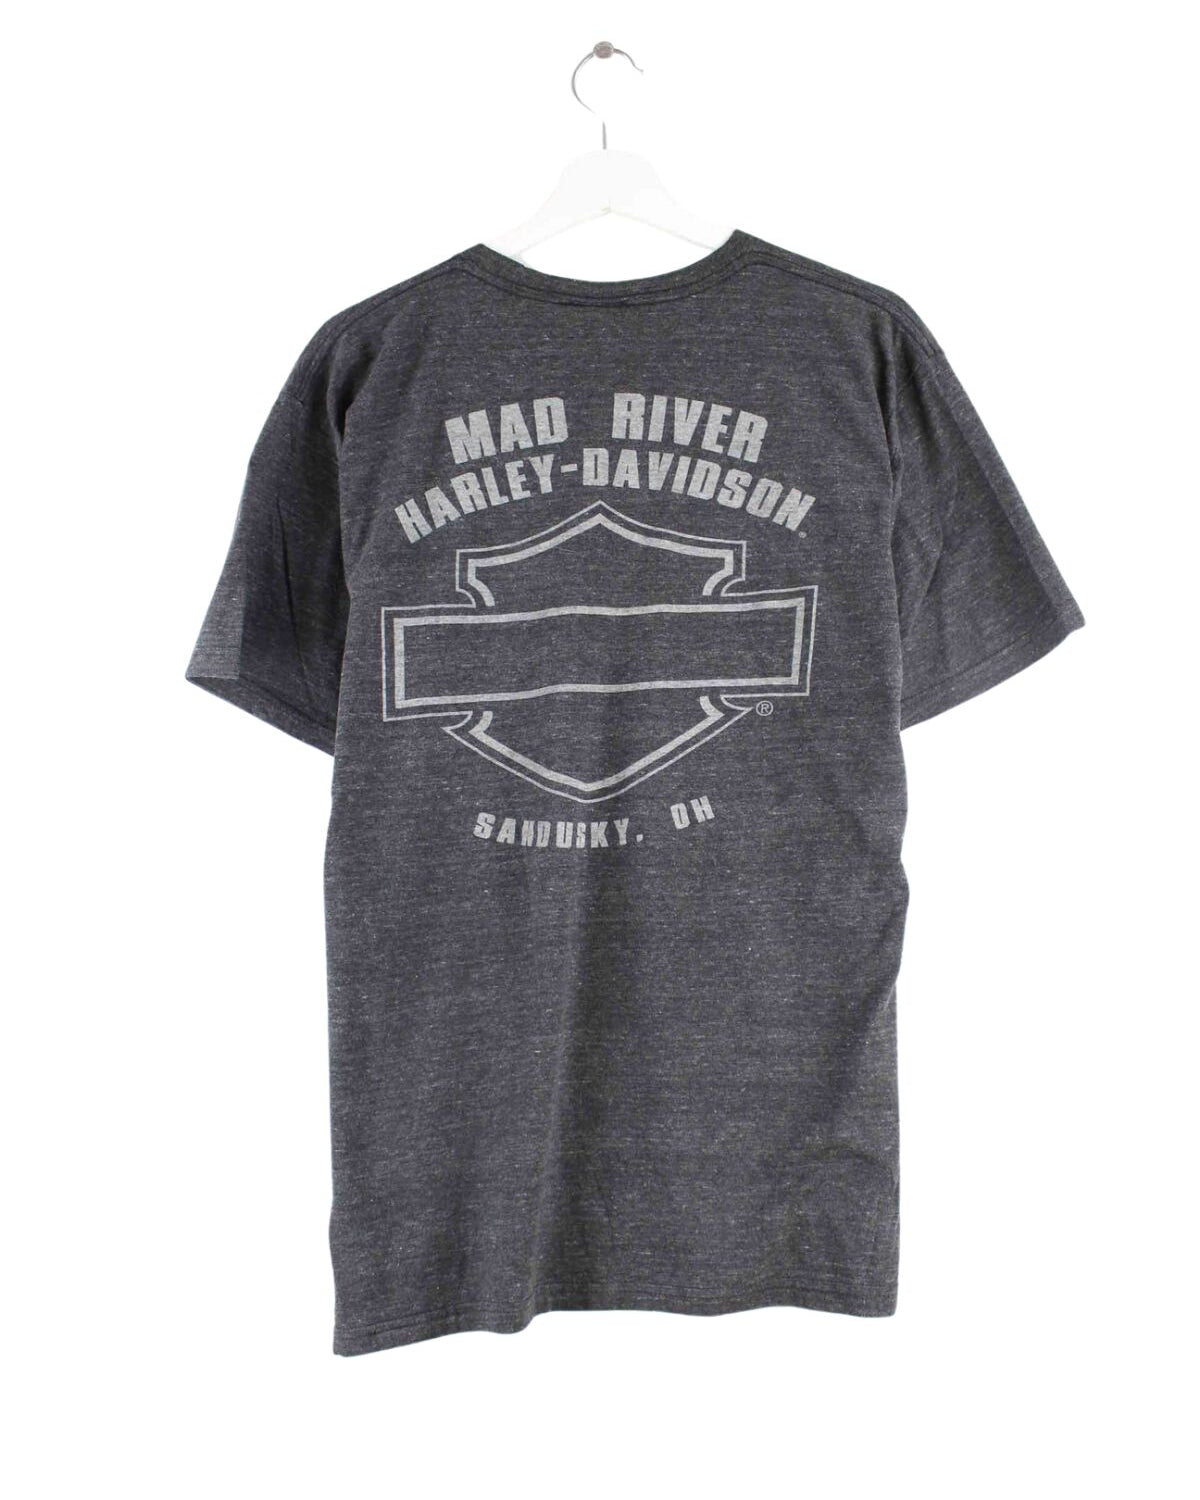 Harley Davidson Sandusky Ohio Print T-Shirt Grau L (back image)